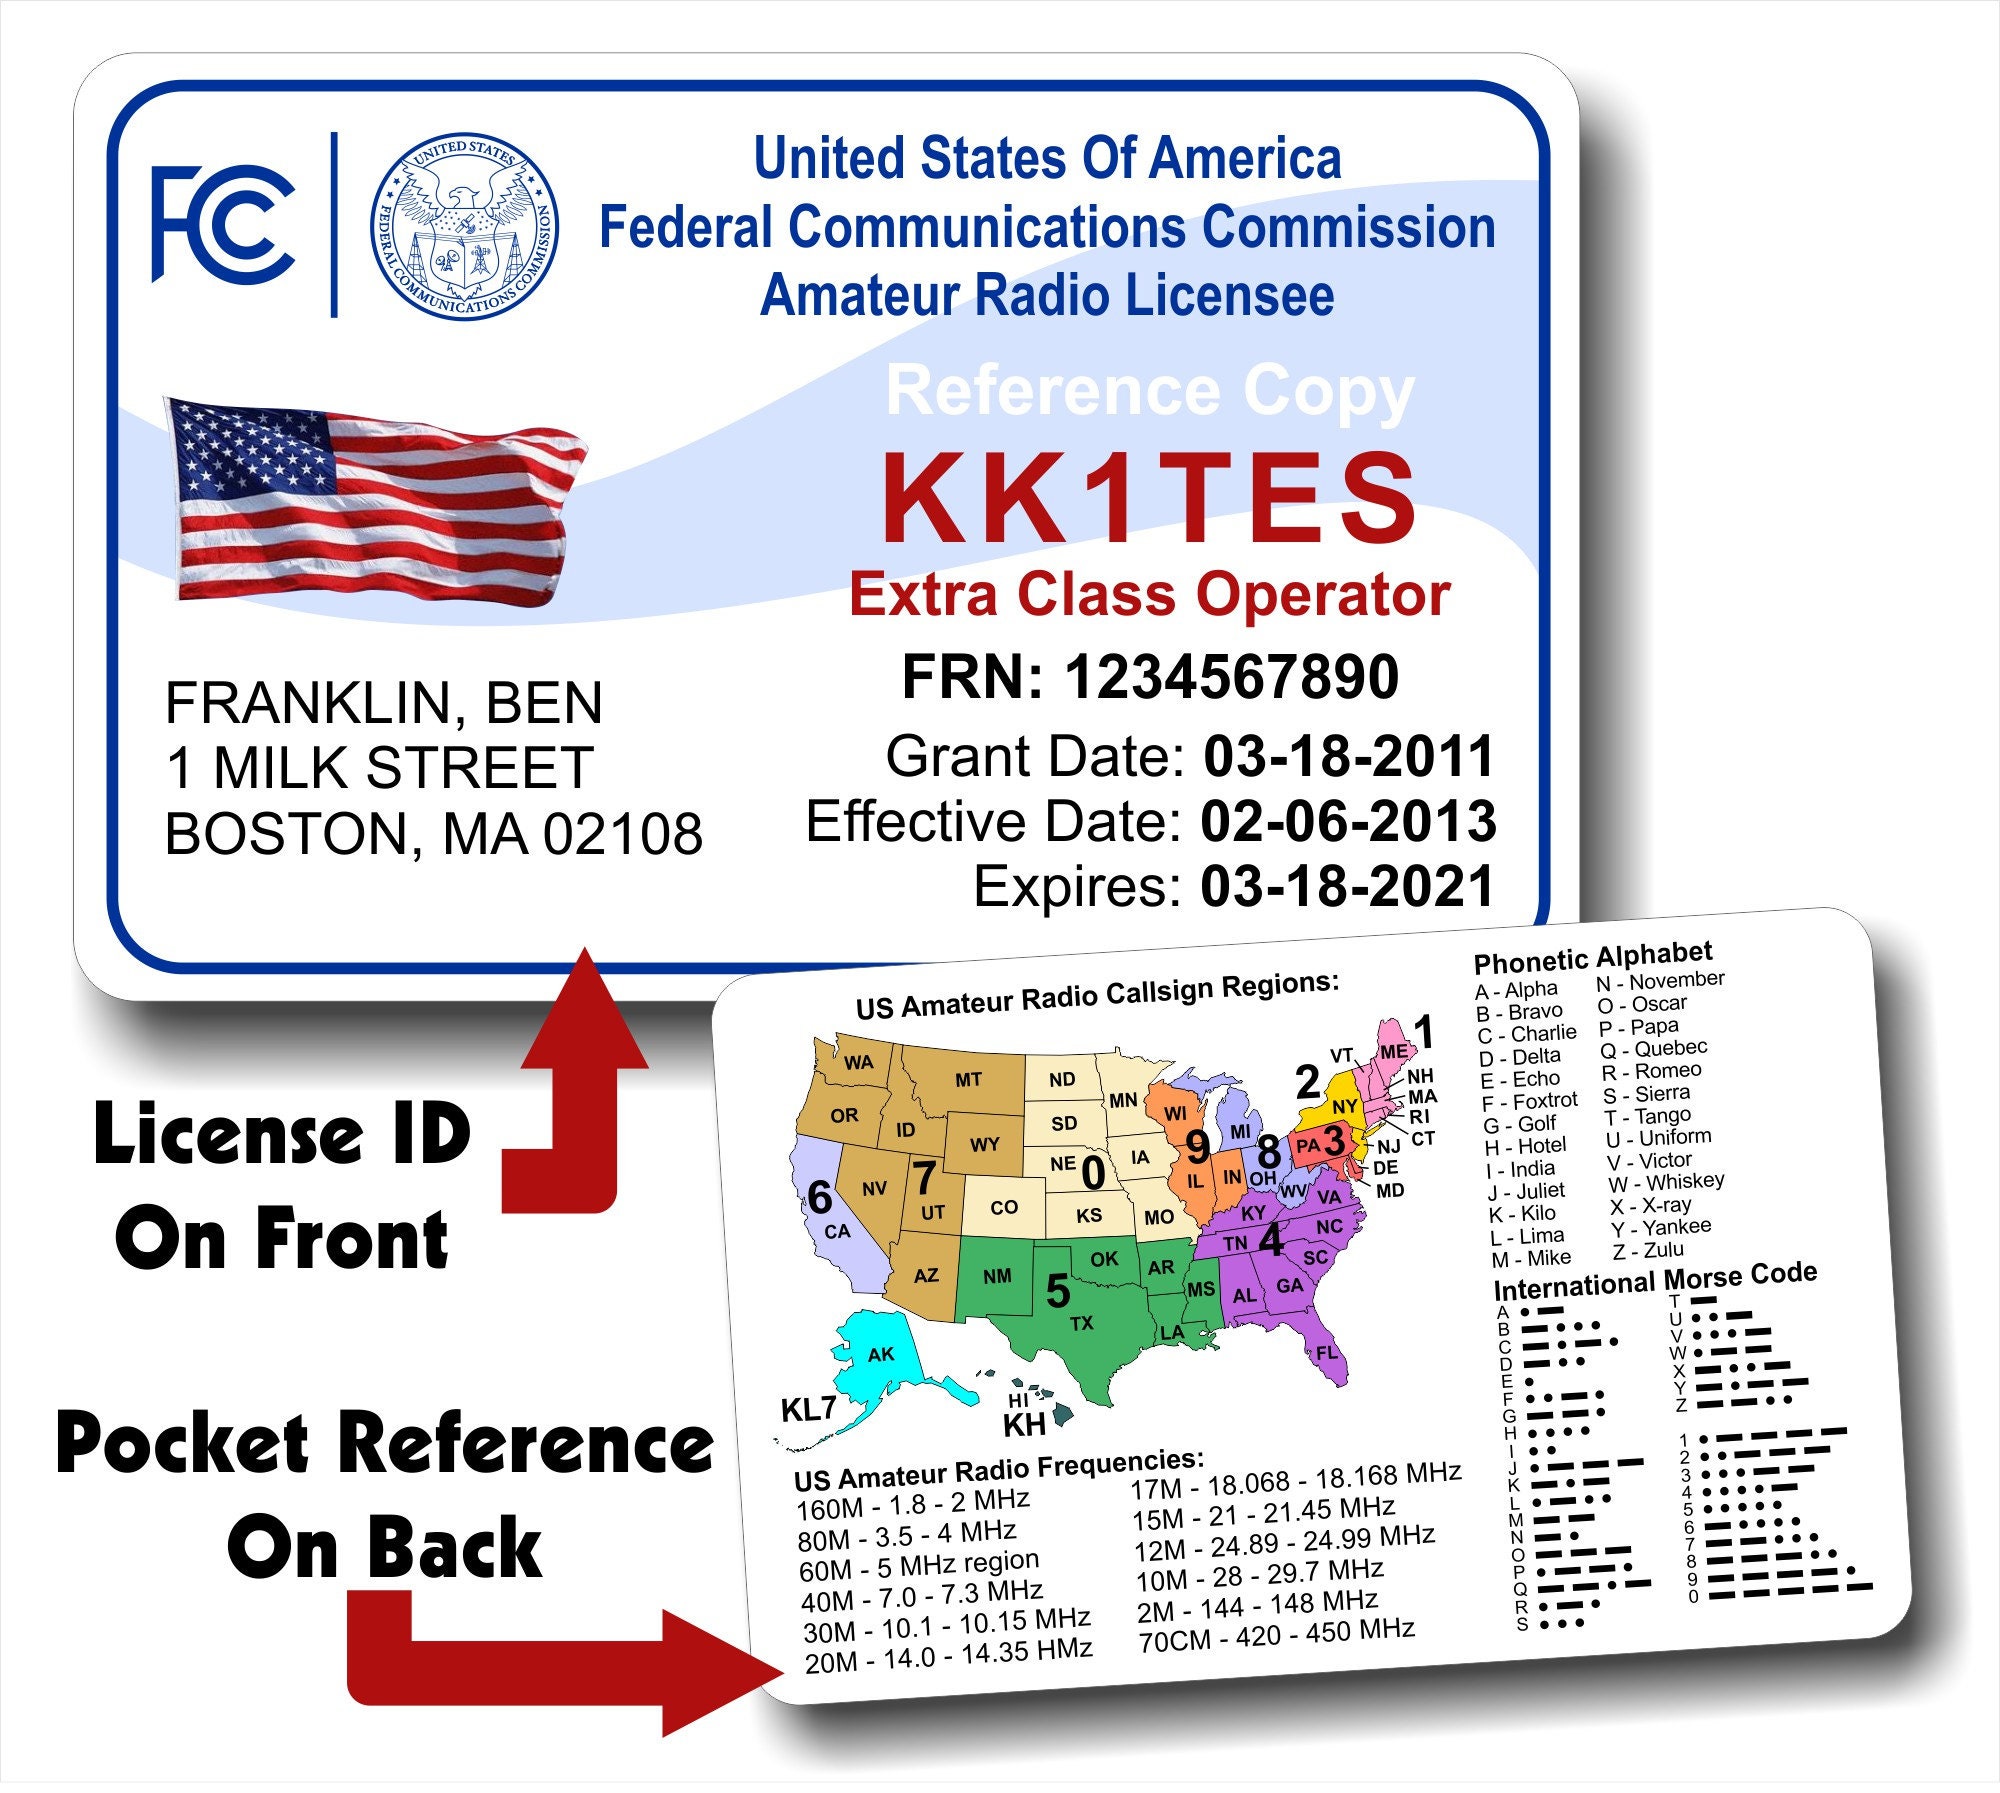 renew amateur operator license Adult Pics Hq